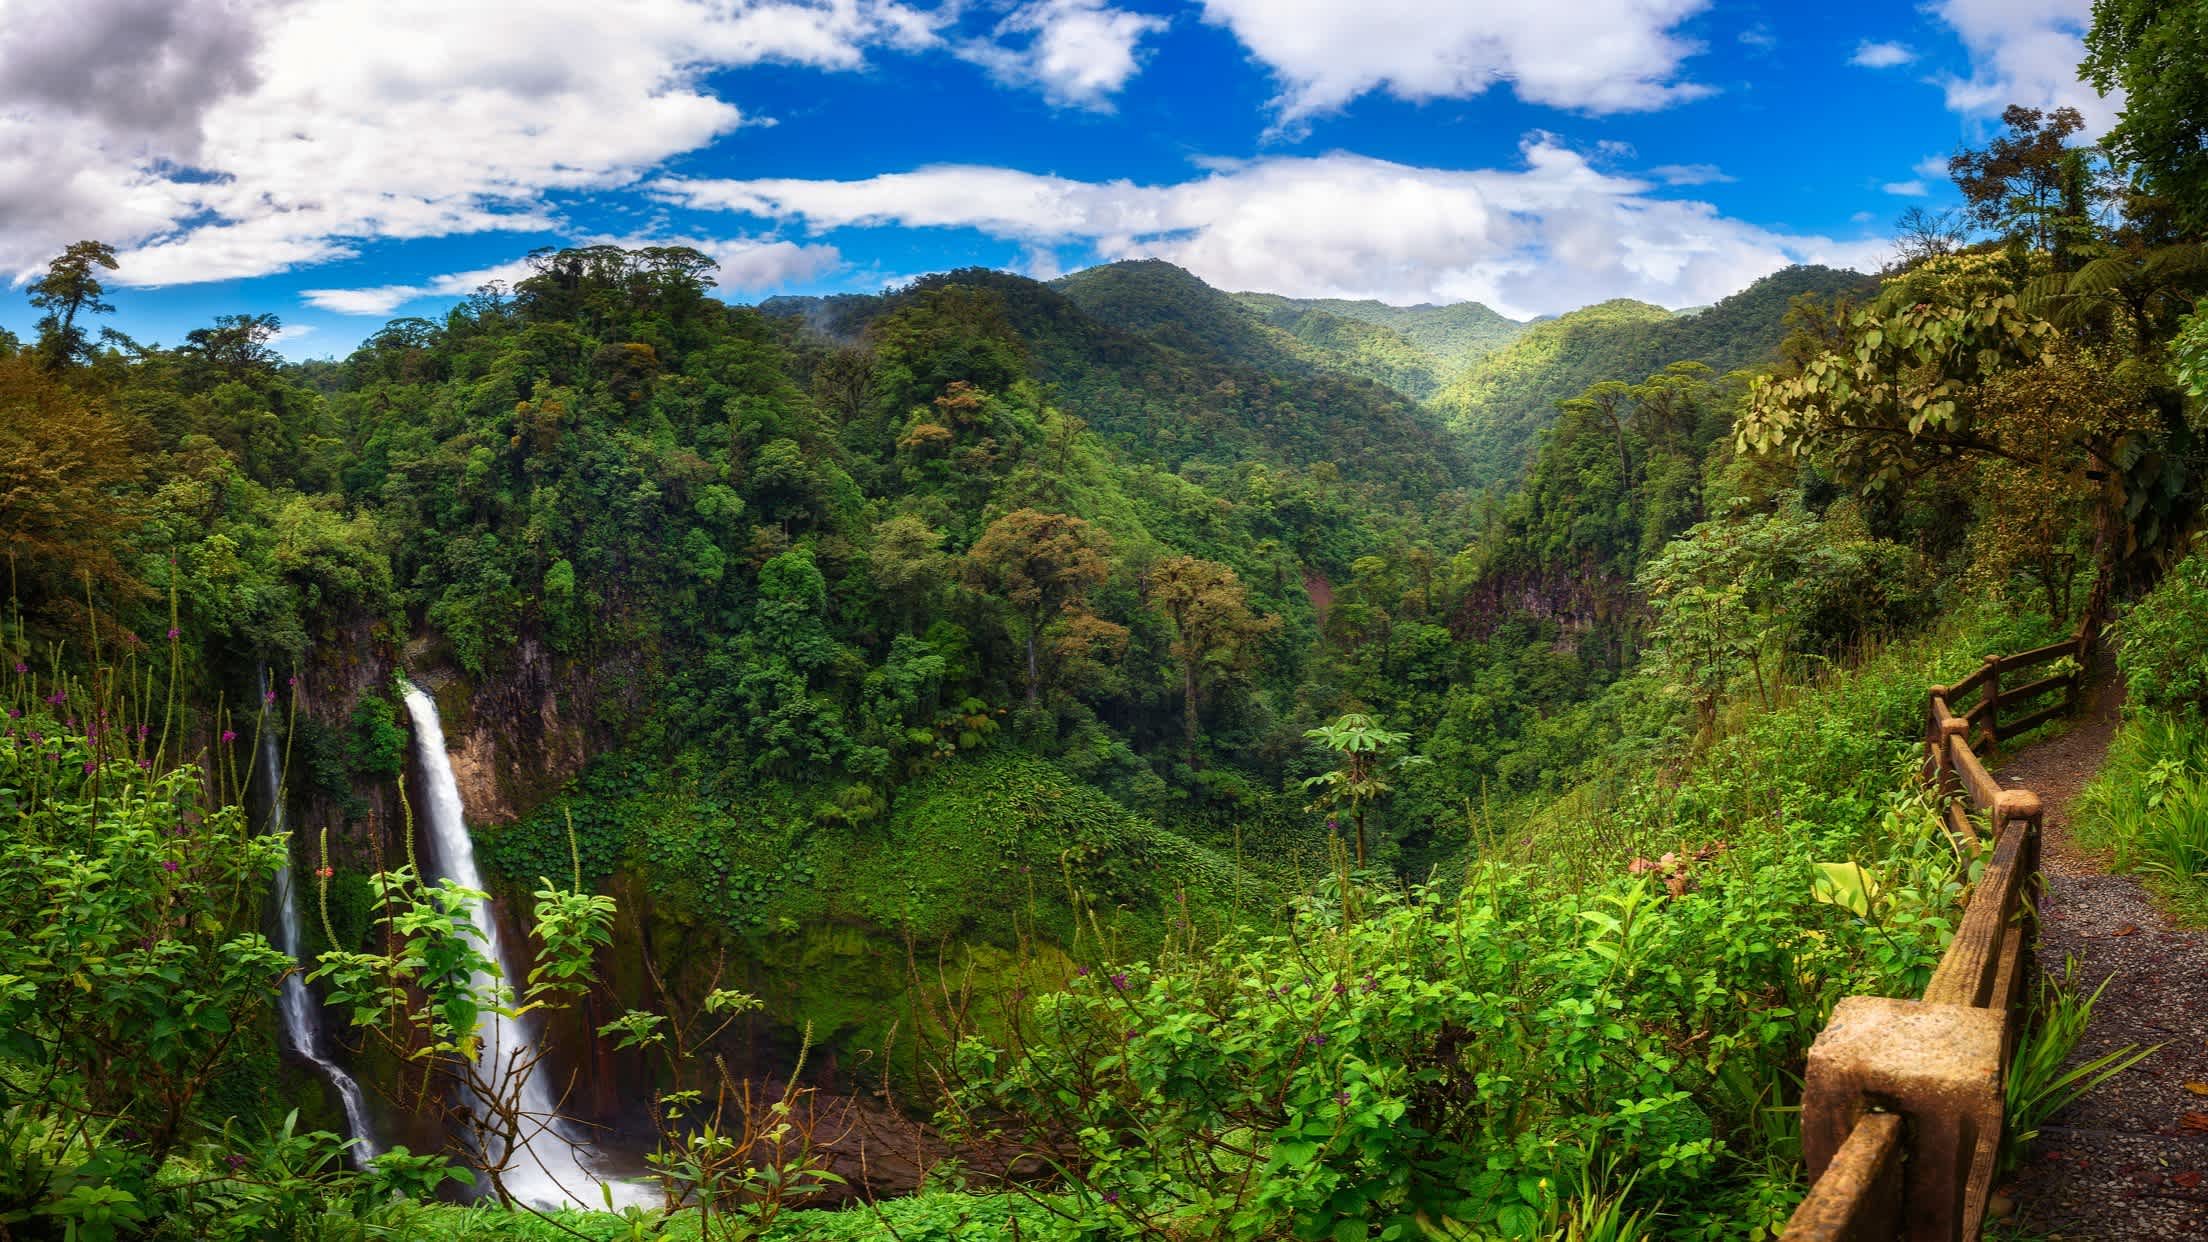 Catarata del Toro Wasserfal Costa Rica